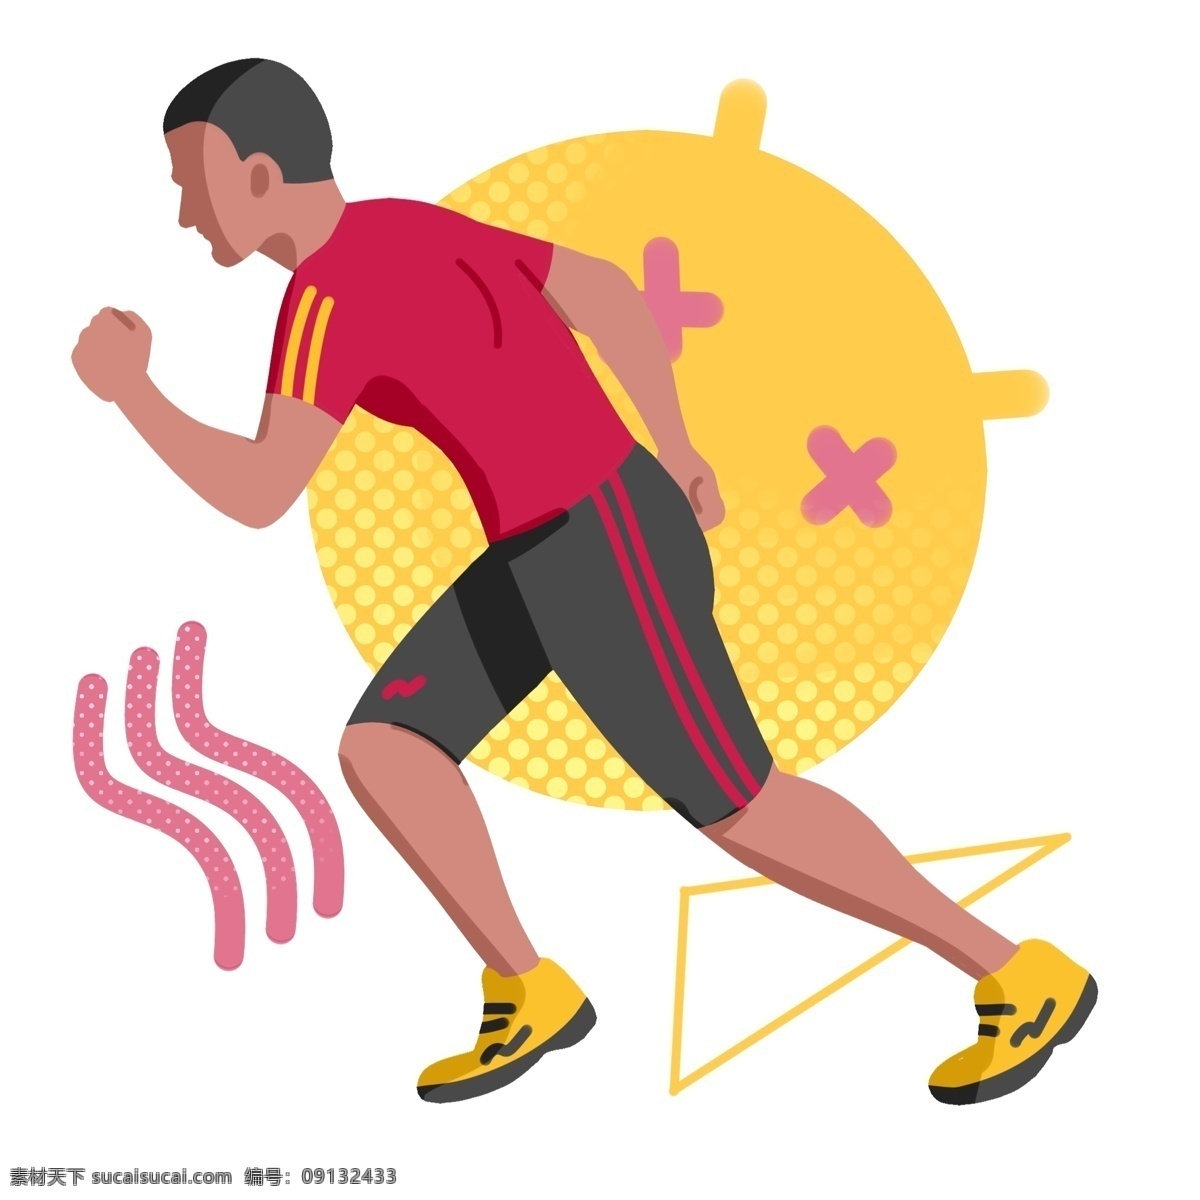 运动 跑步 卡通 插画 跑步的男孩 卡通插画 运动插画 健身运动 锻炼身体 活动筋骨 运动热身插画